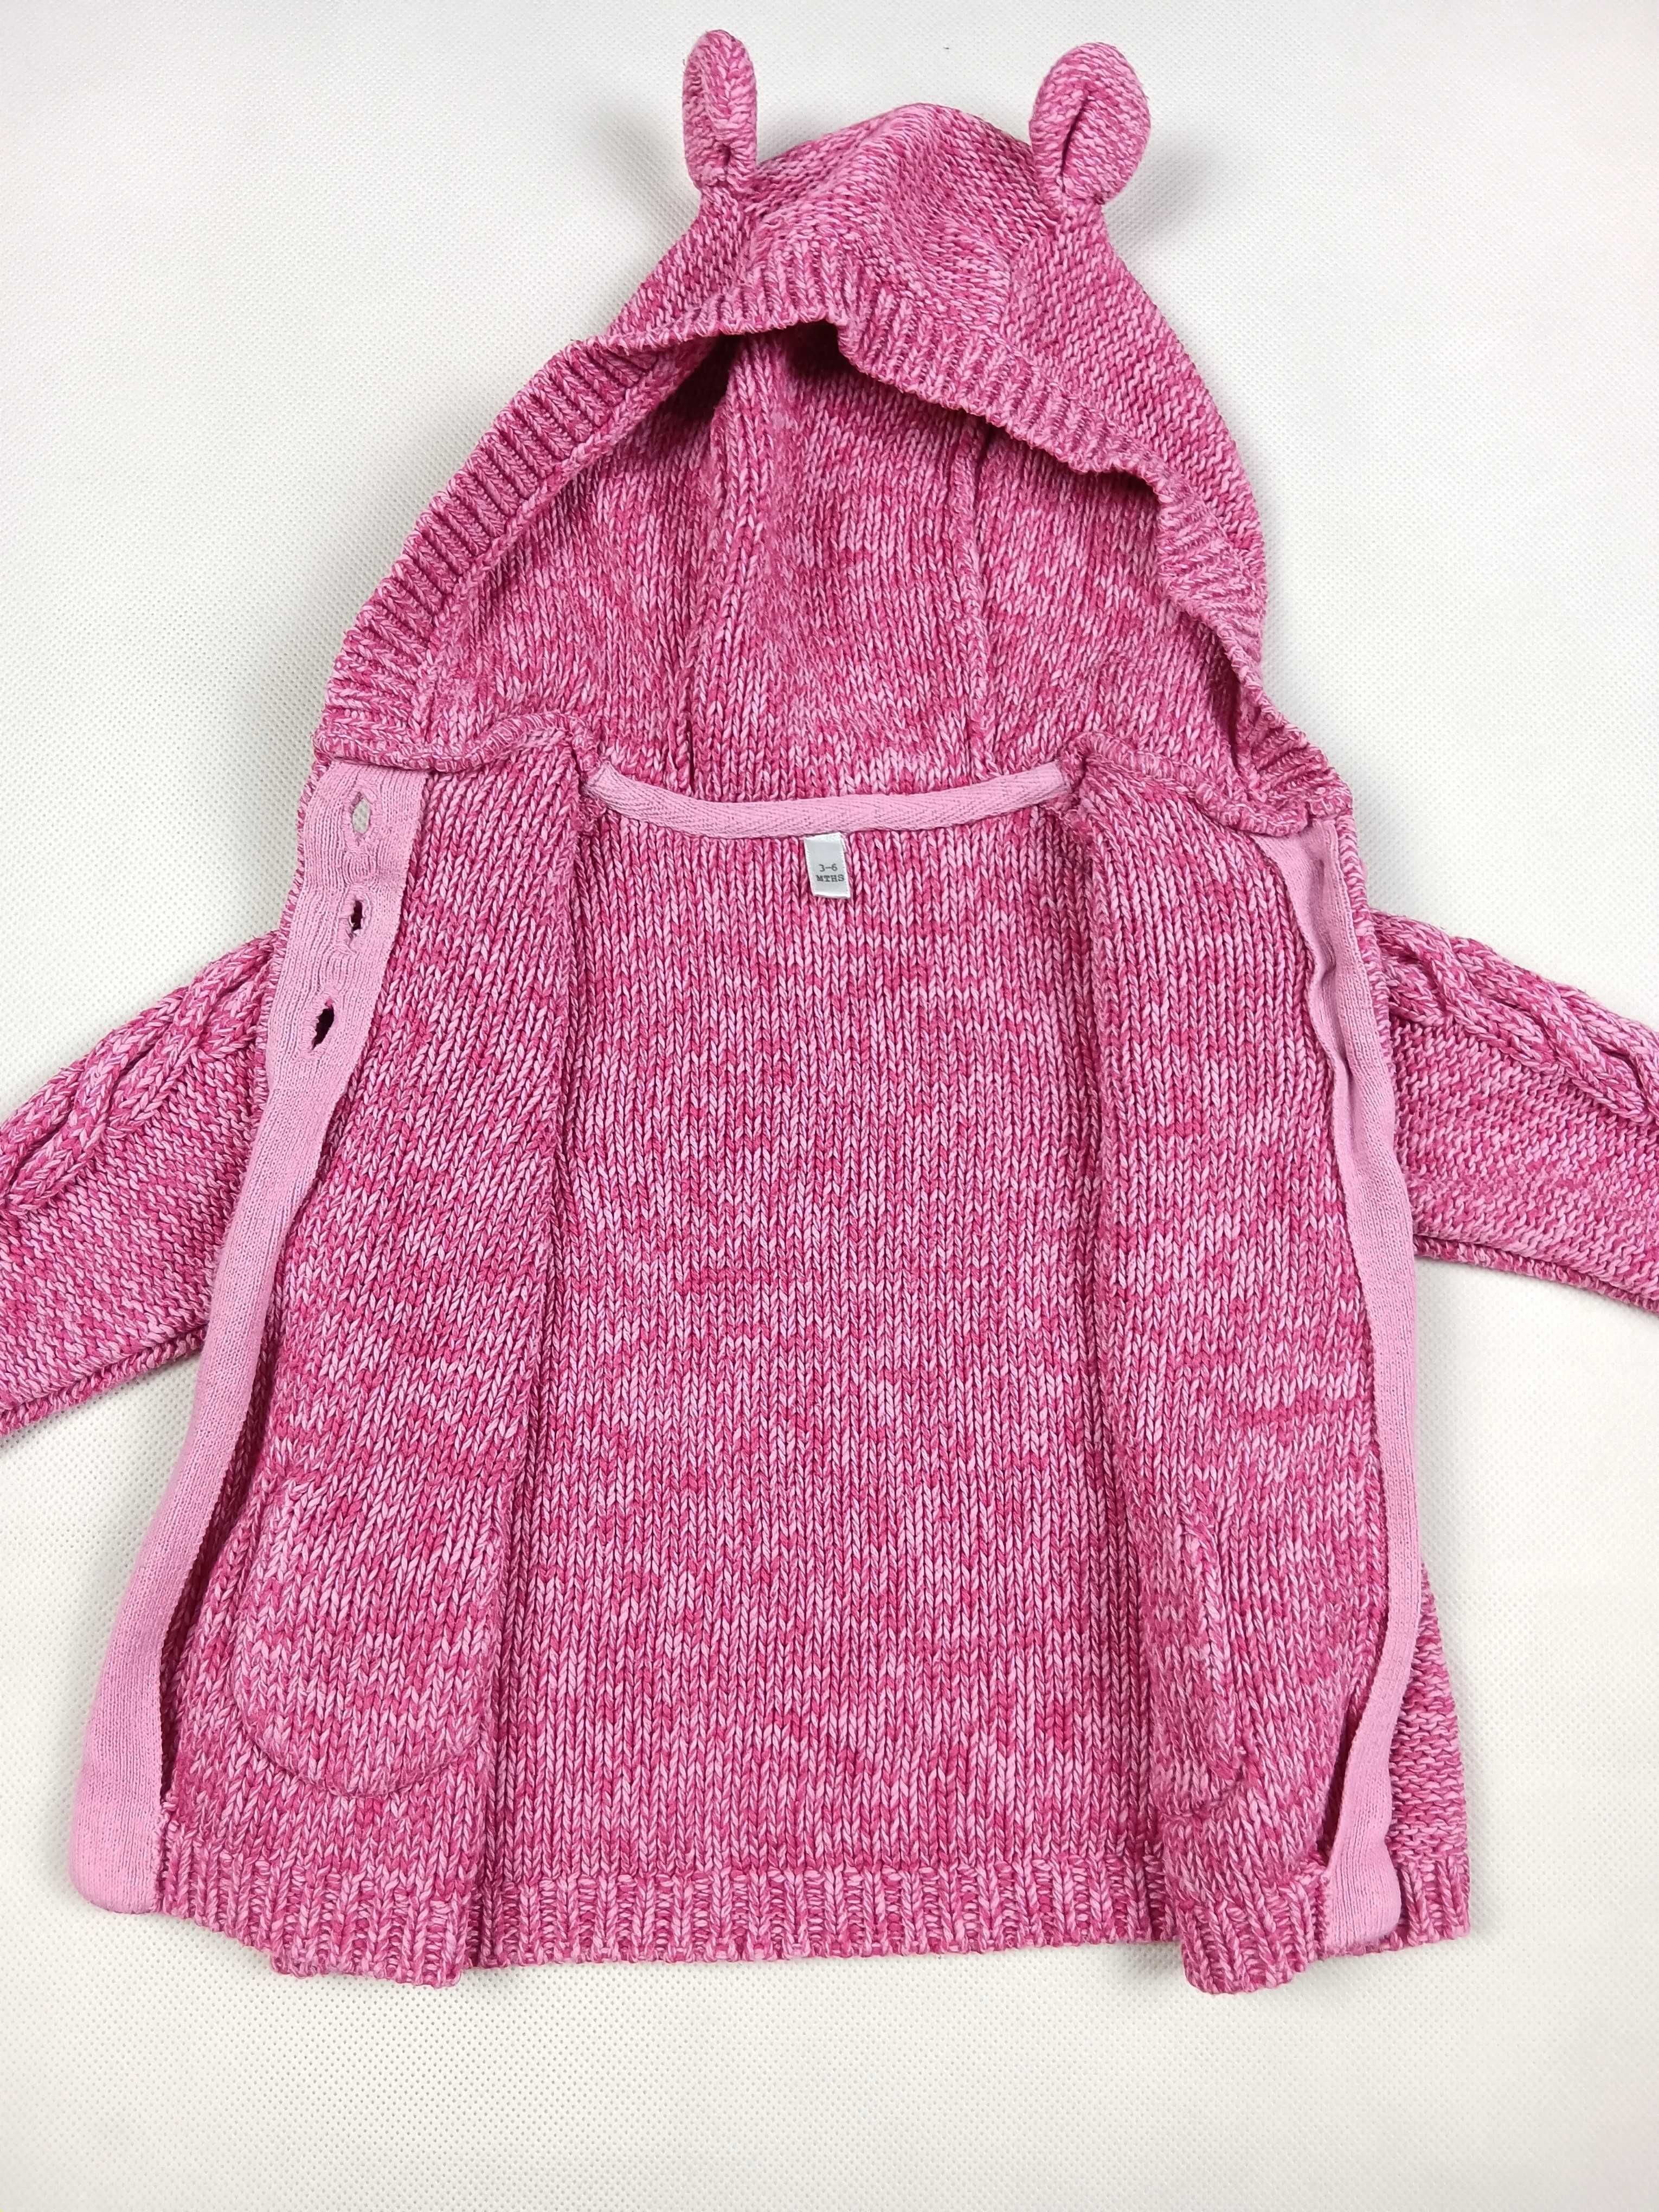 Różowy rozpinany sweterek dziecięcy z kapturem 68 /3-6 miesięcy